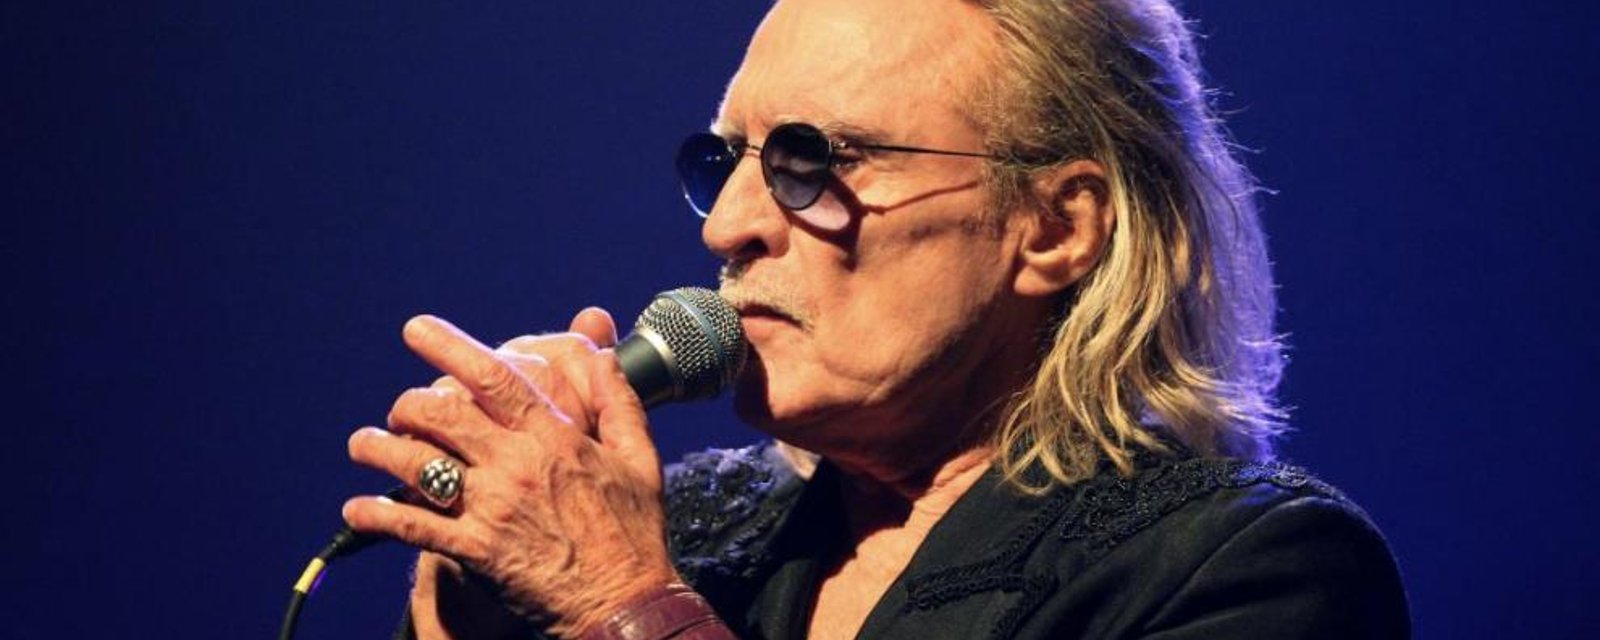 DERNIÈRE HEURE: Le chanteur Christophe est décédé de la COVID-19 à l'âge de 74 ans